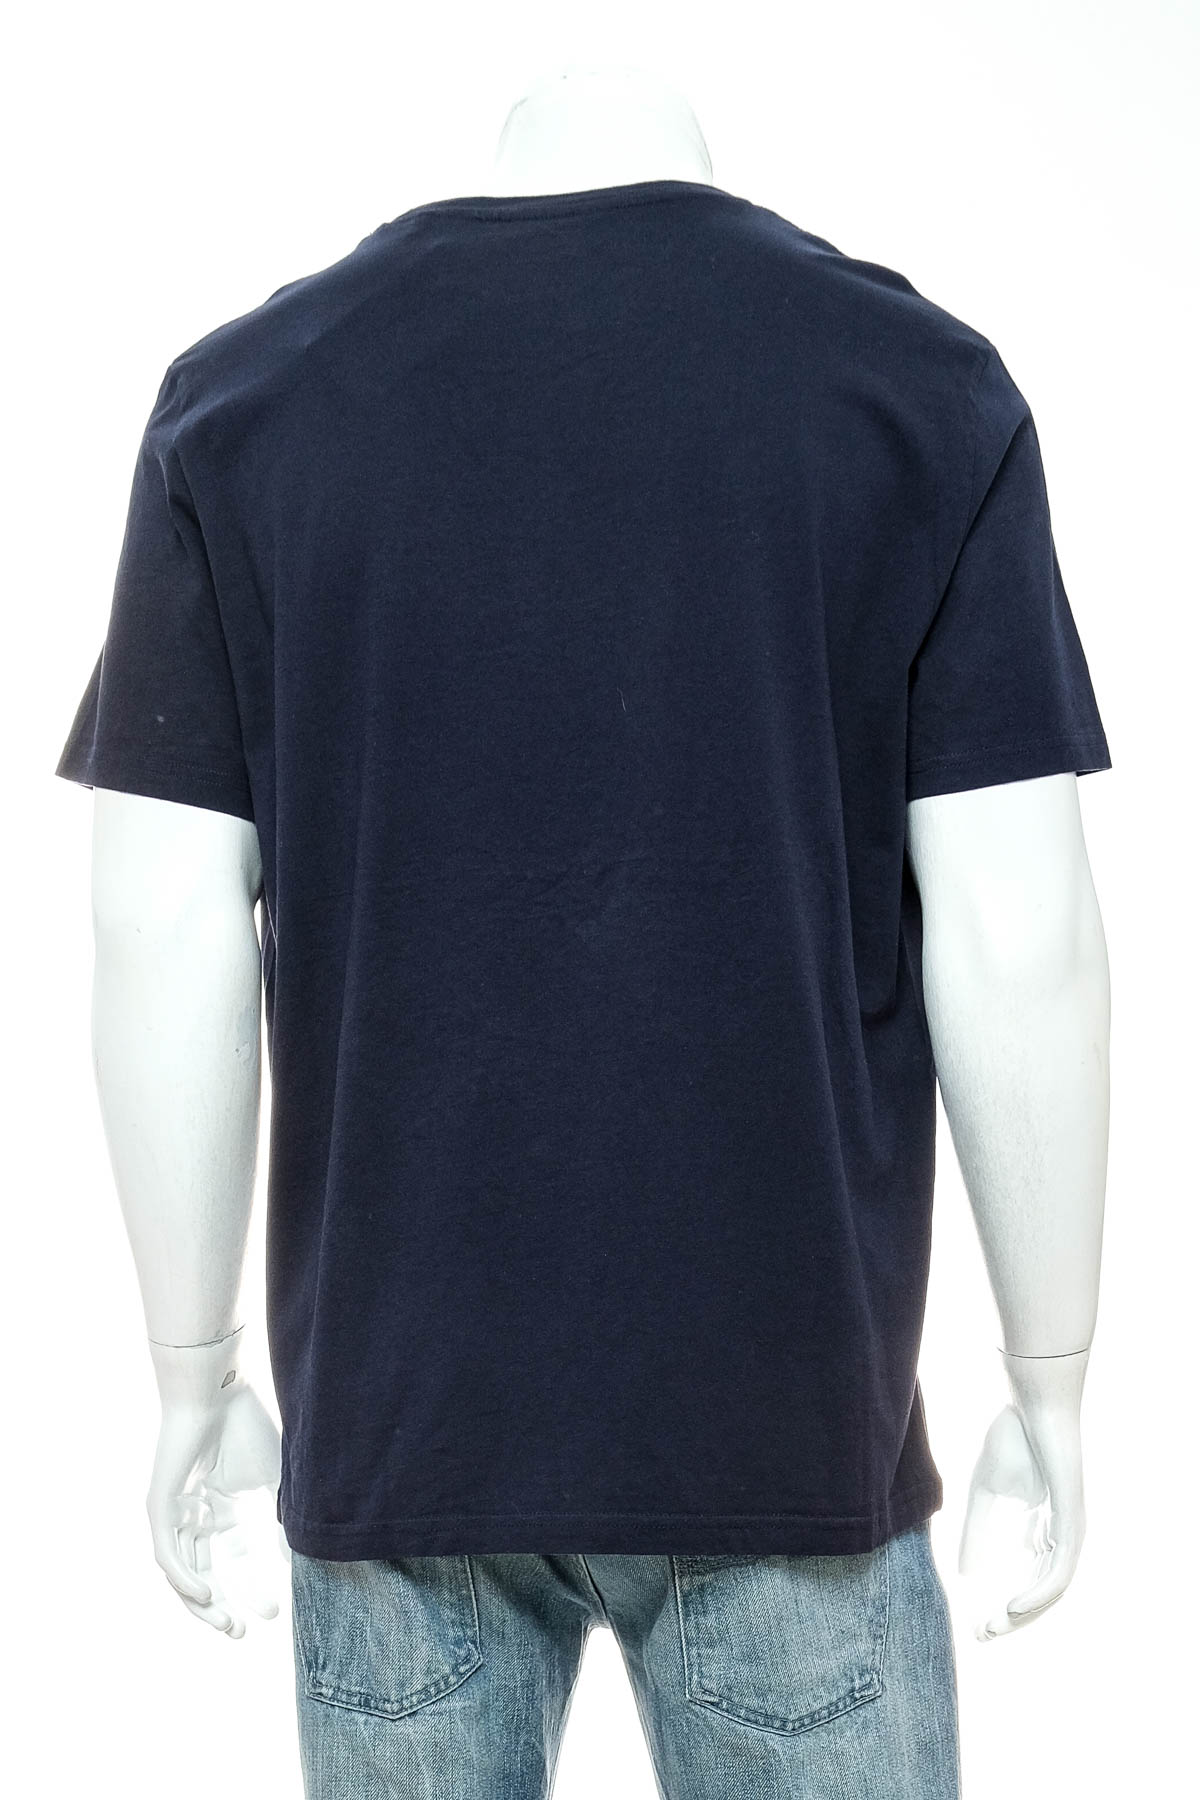 Αντρική μπλούζα - The Basics x C&A - 1